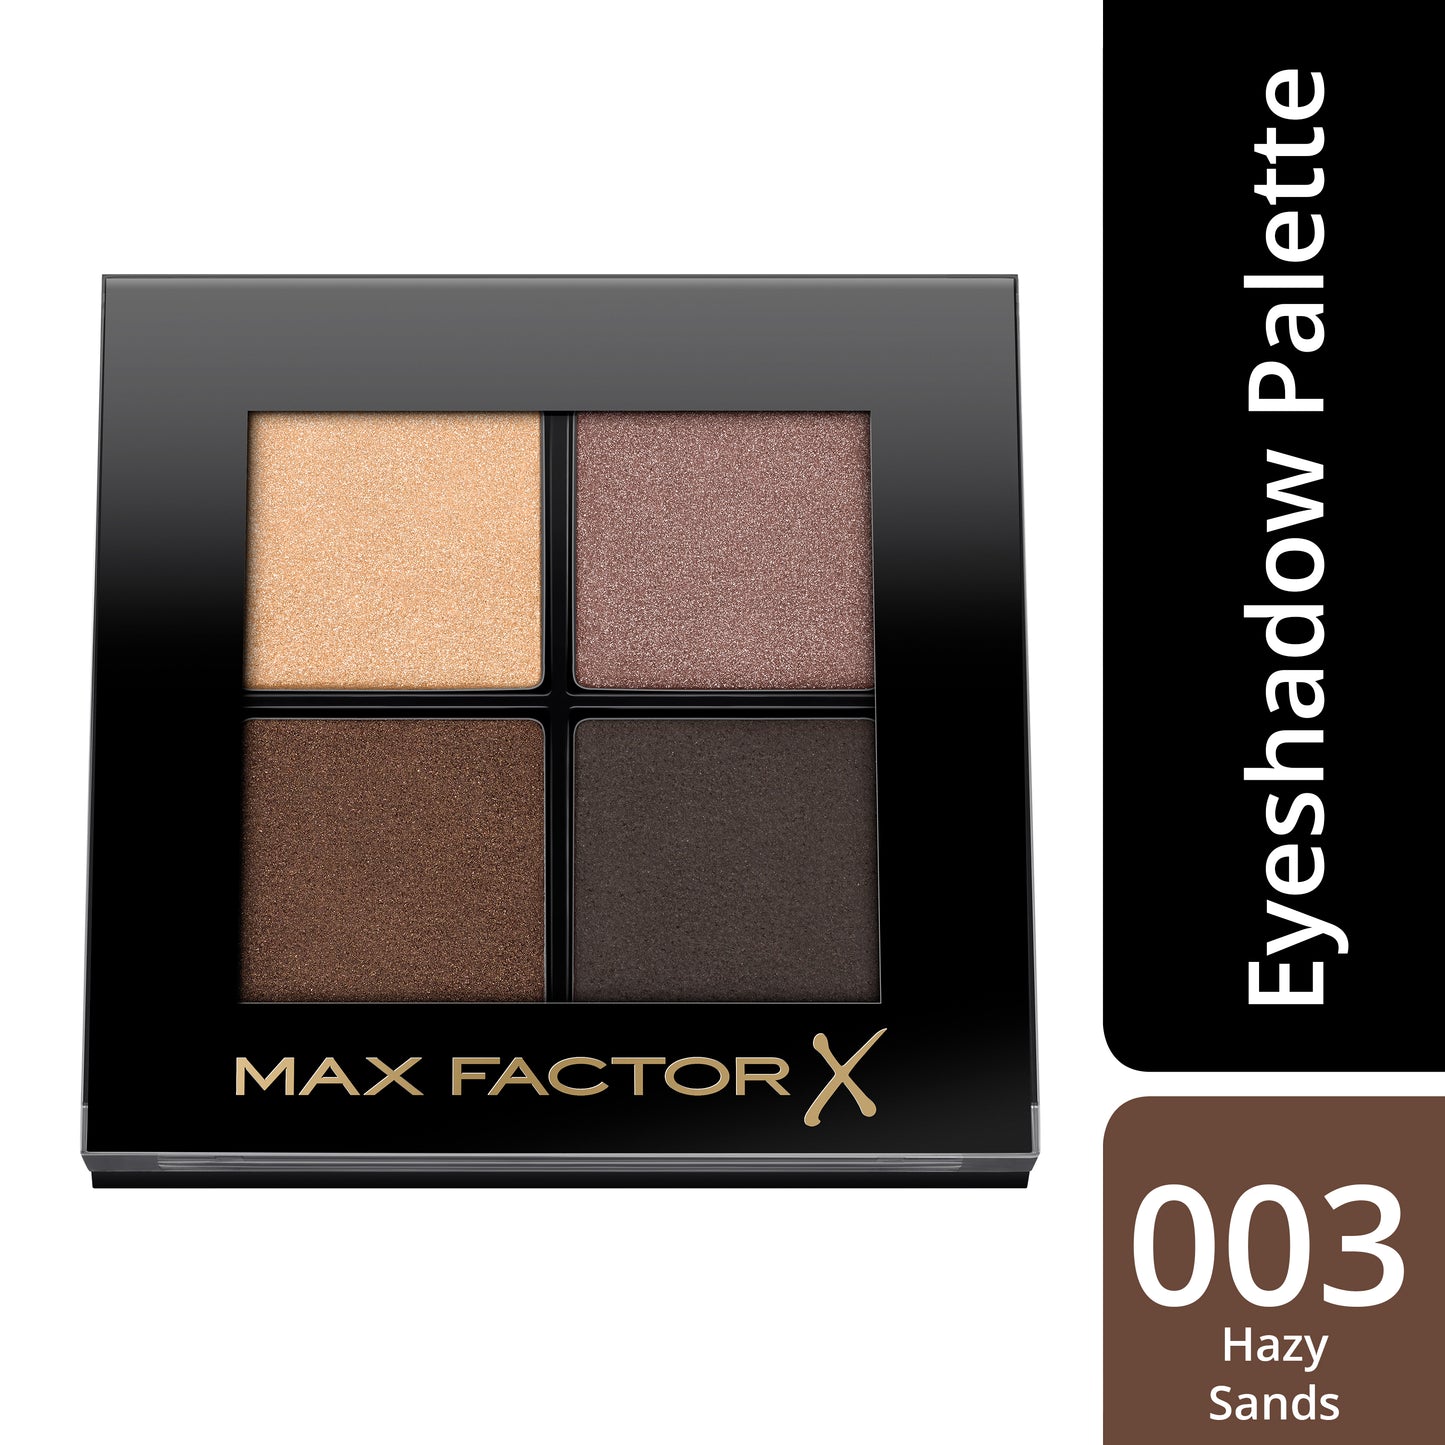 Max Factor Colour X-Pert Soft Touch Palette Ombretti, 4 Ombretti dal Colore Intenso, Altamente Sfumabili, 003 Hazy Sands